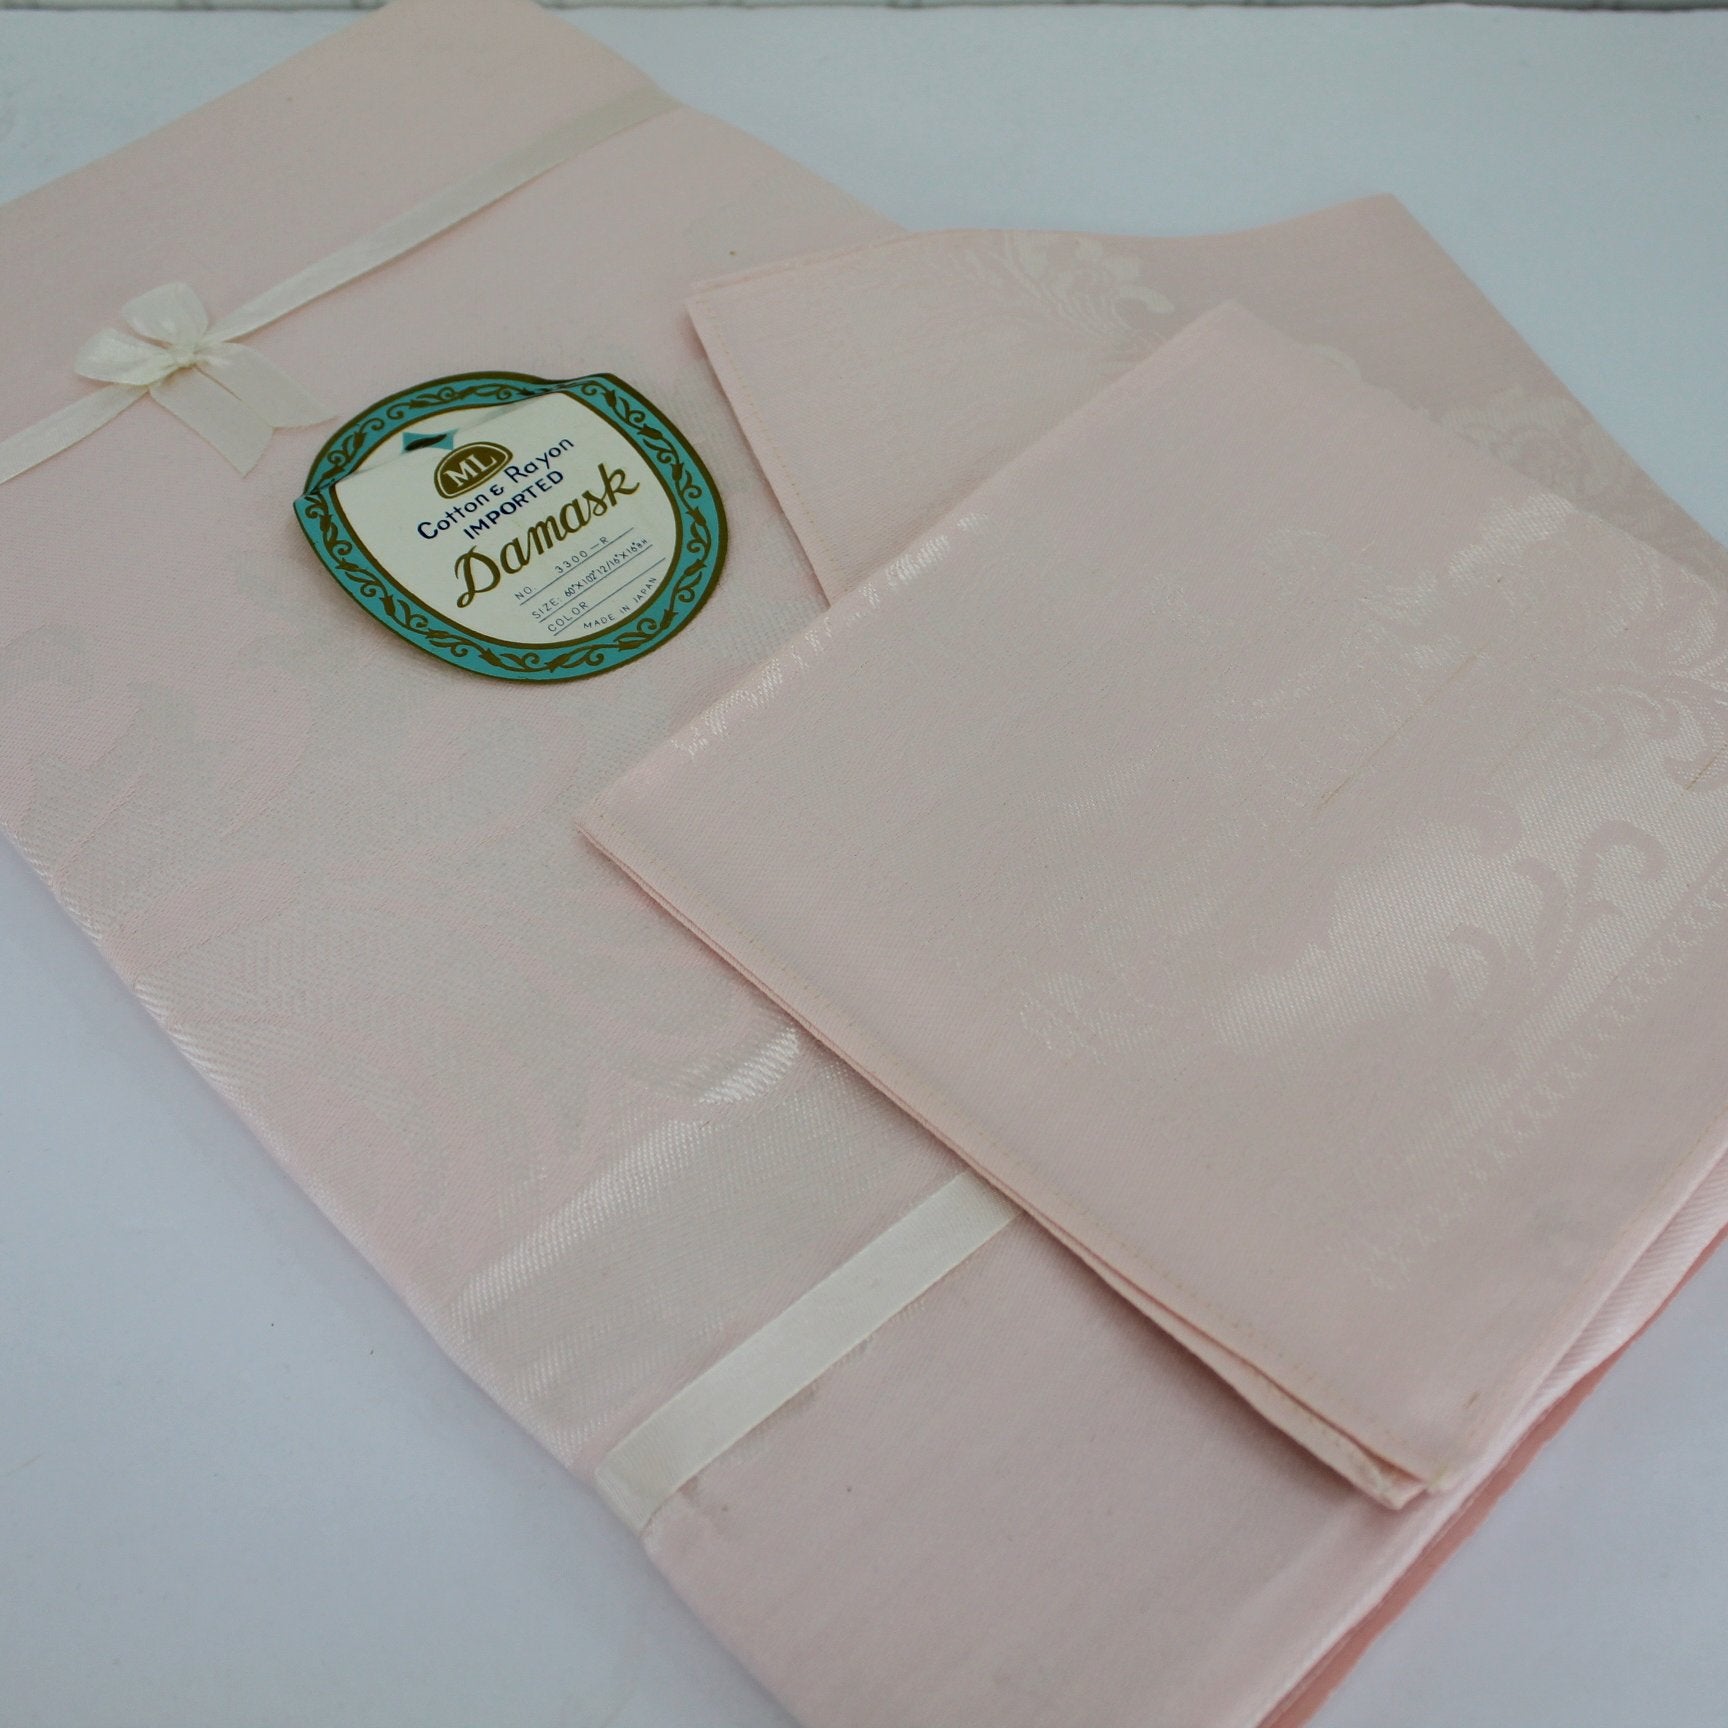 Pink Damask Tablecloth New Vintage Original Labels 6 Matching Napkins Japan closeup subtle damask design